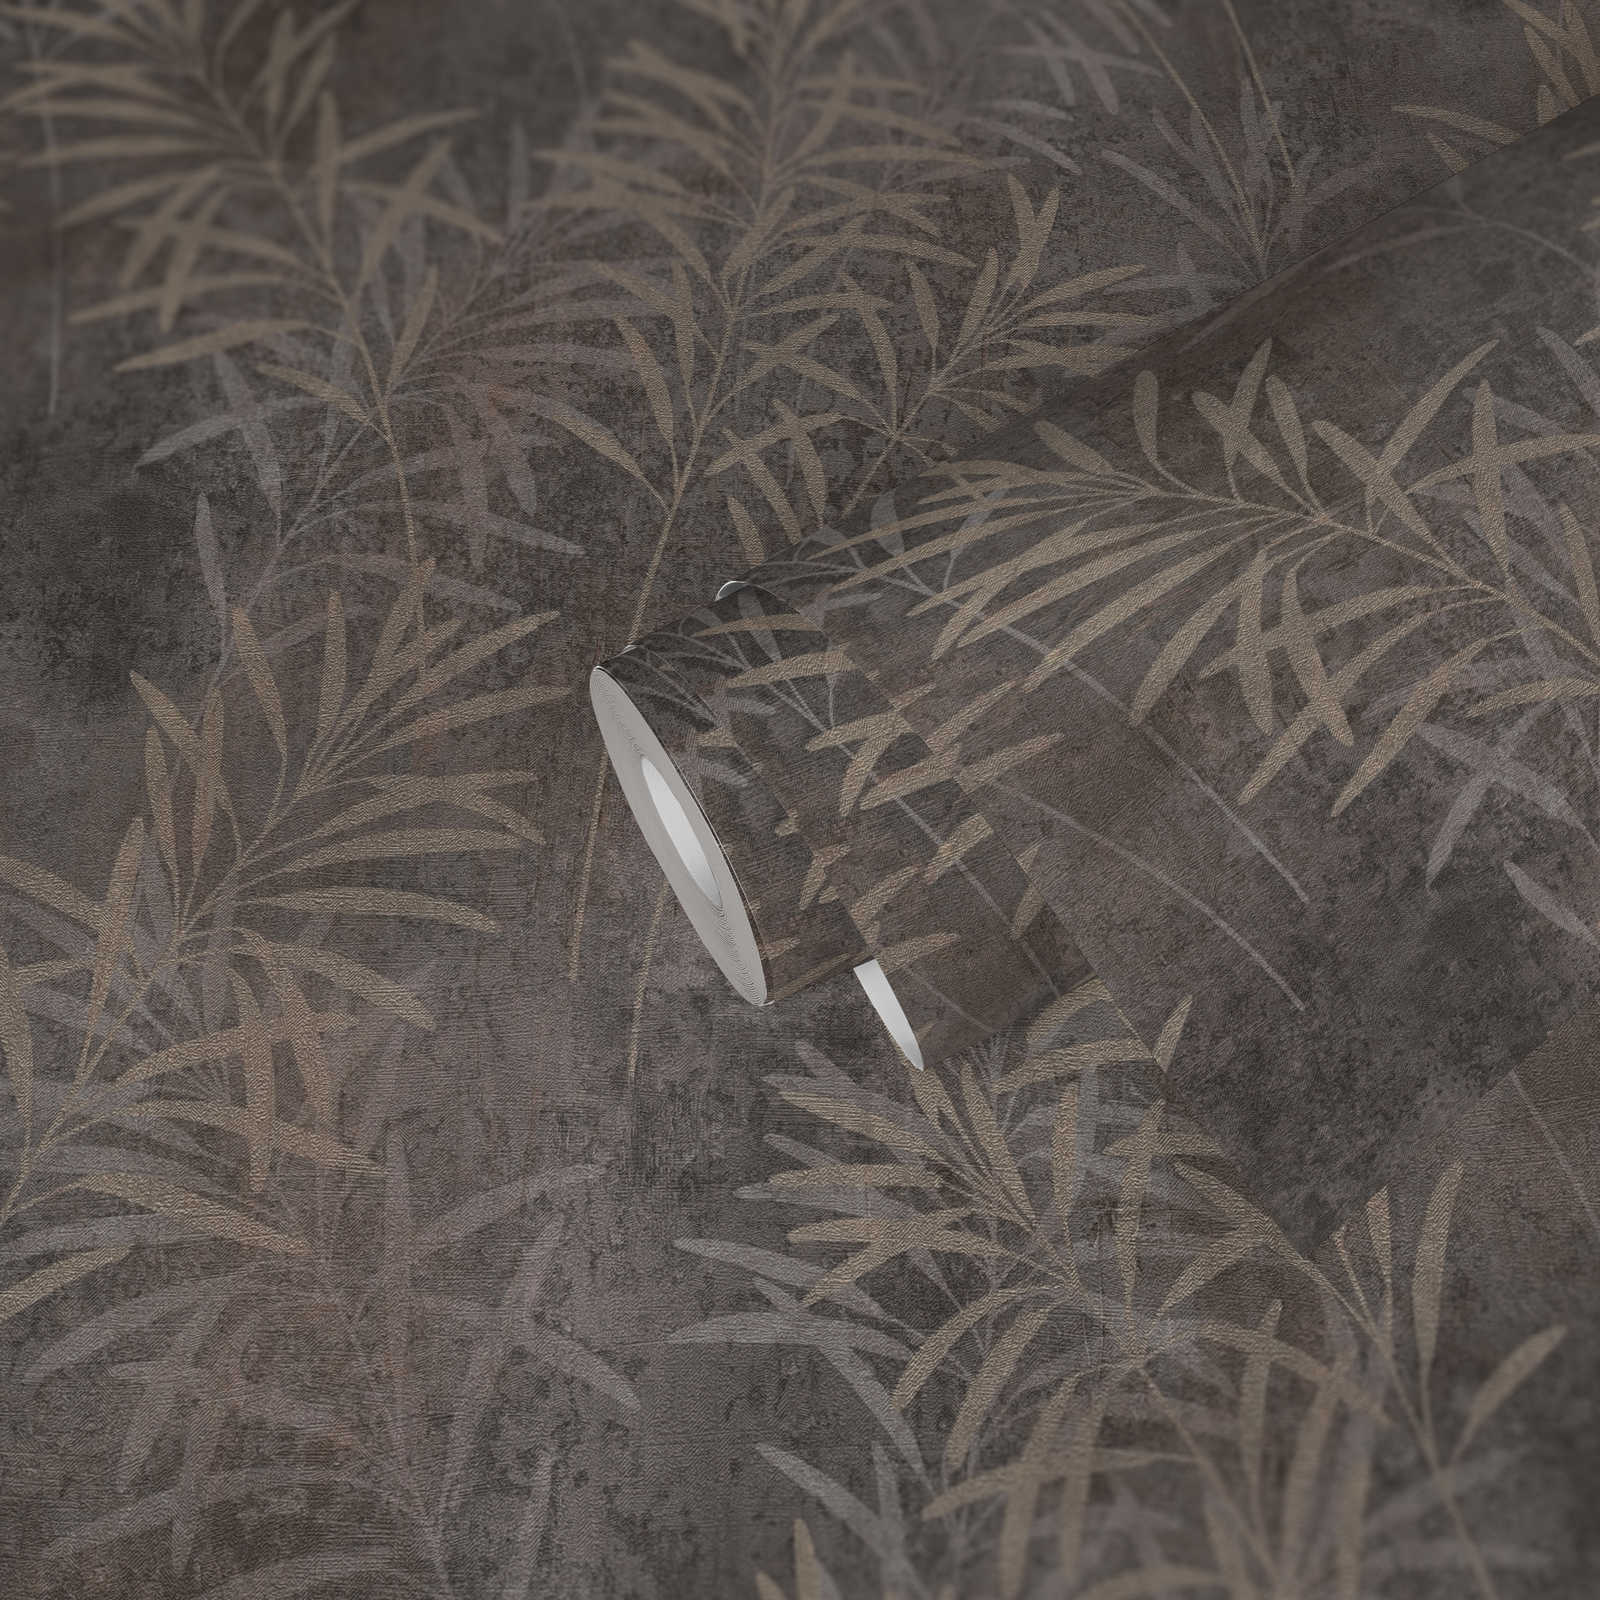             Papier peint intissé floral avec motif d'herbes et texture fine - gris, beige, métallique
        